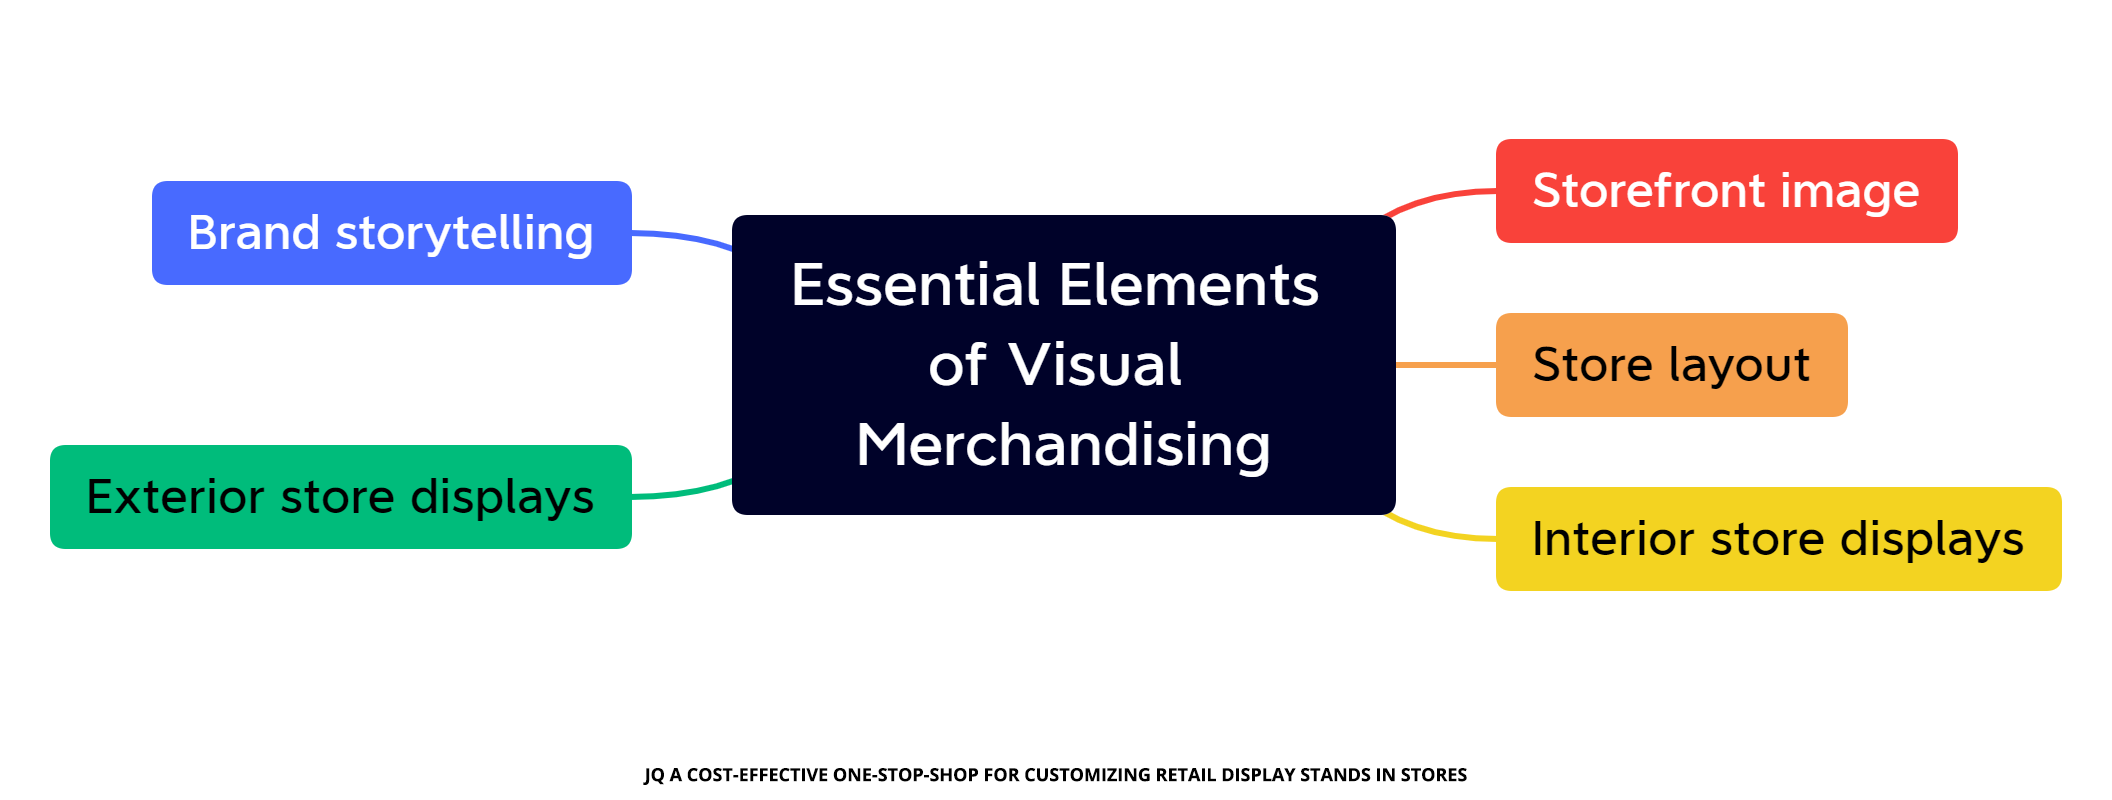 A kiskereskedelmi vizuális merchandising alapvető elemei